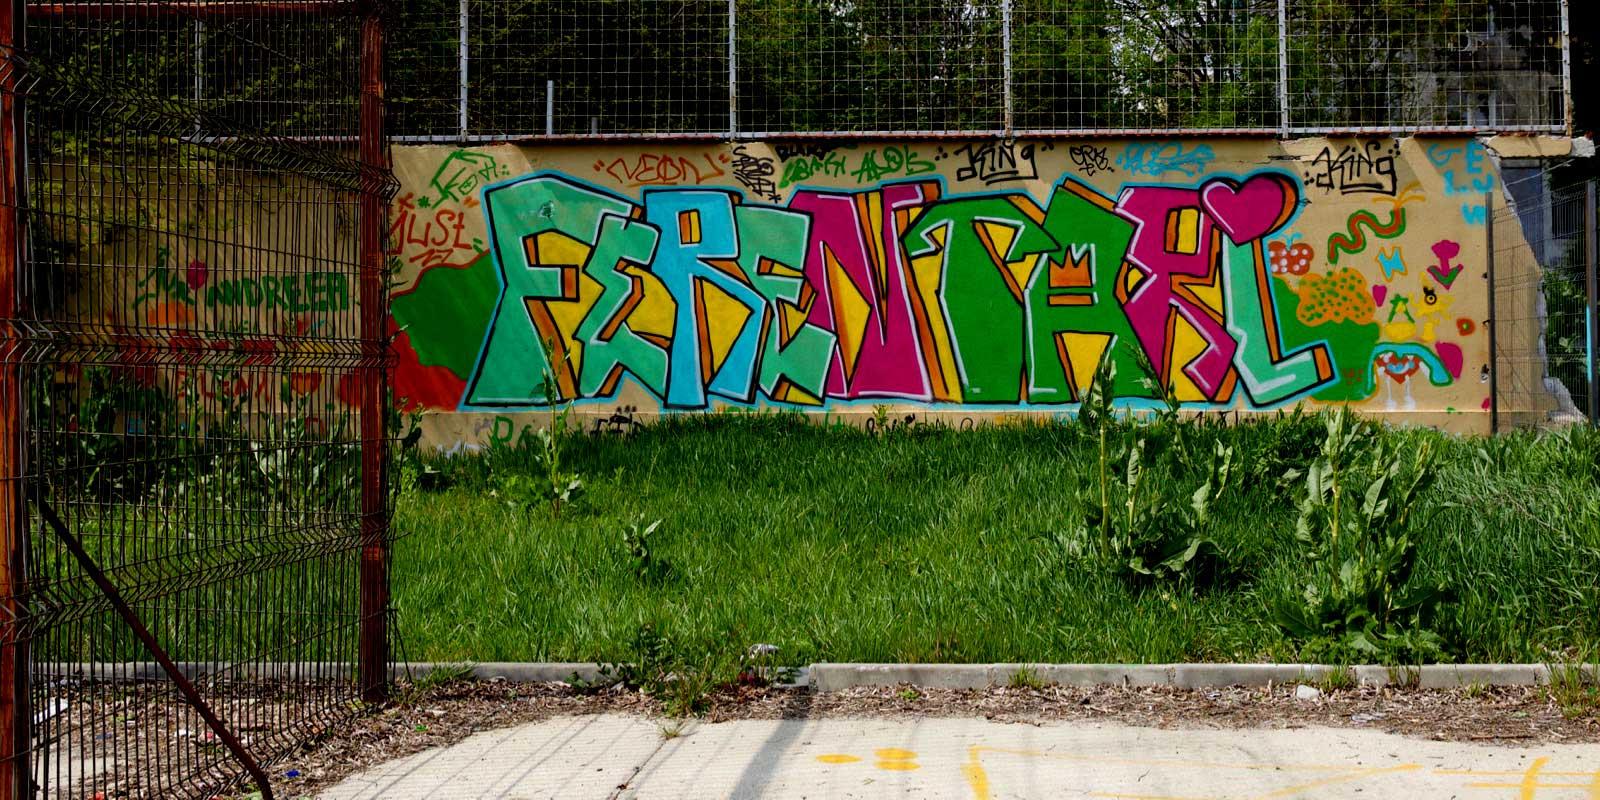 Graffitti on wall: Ferentari